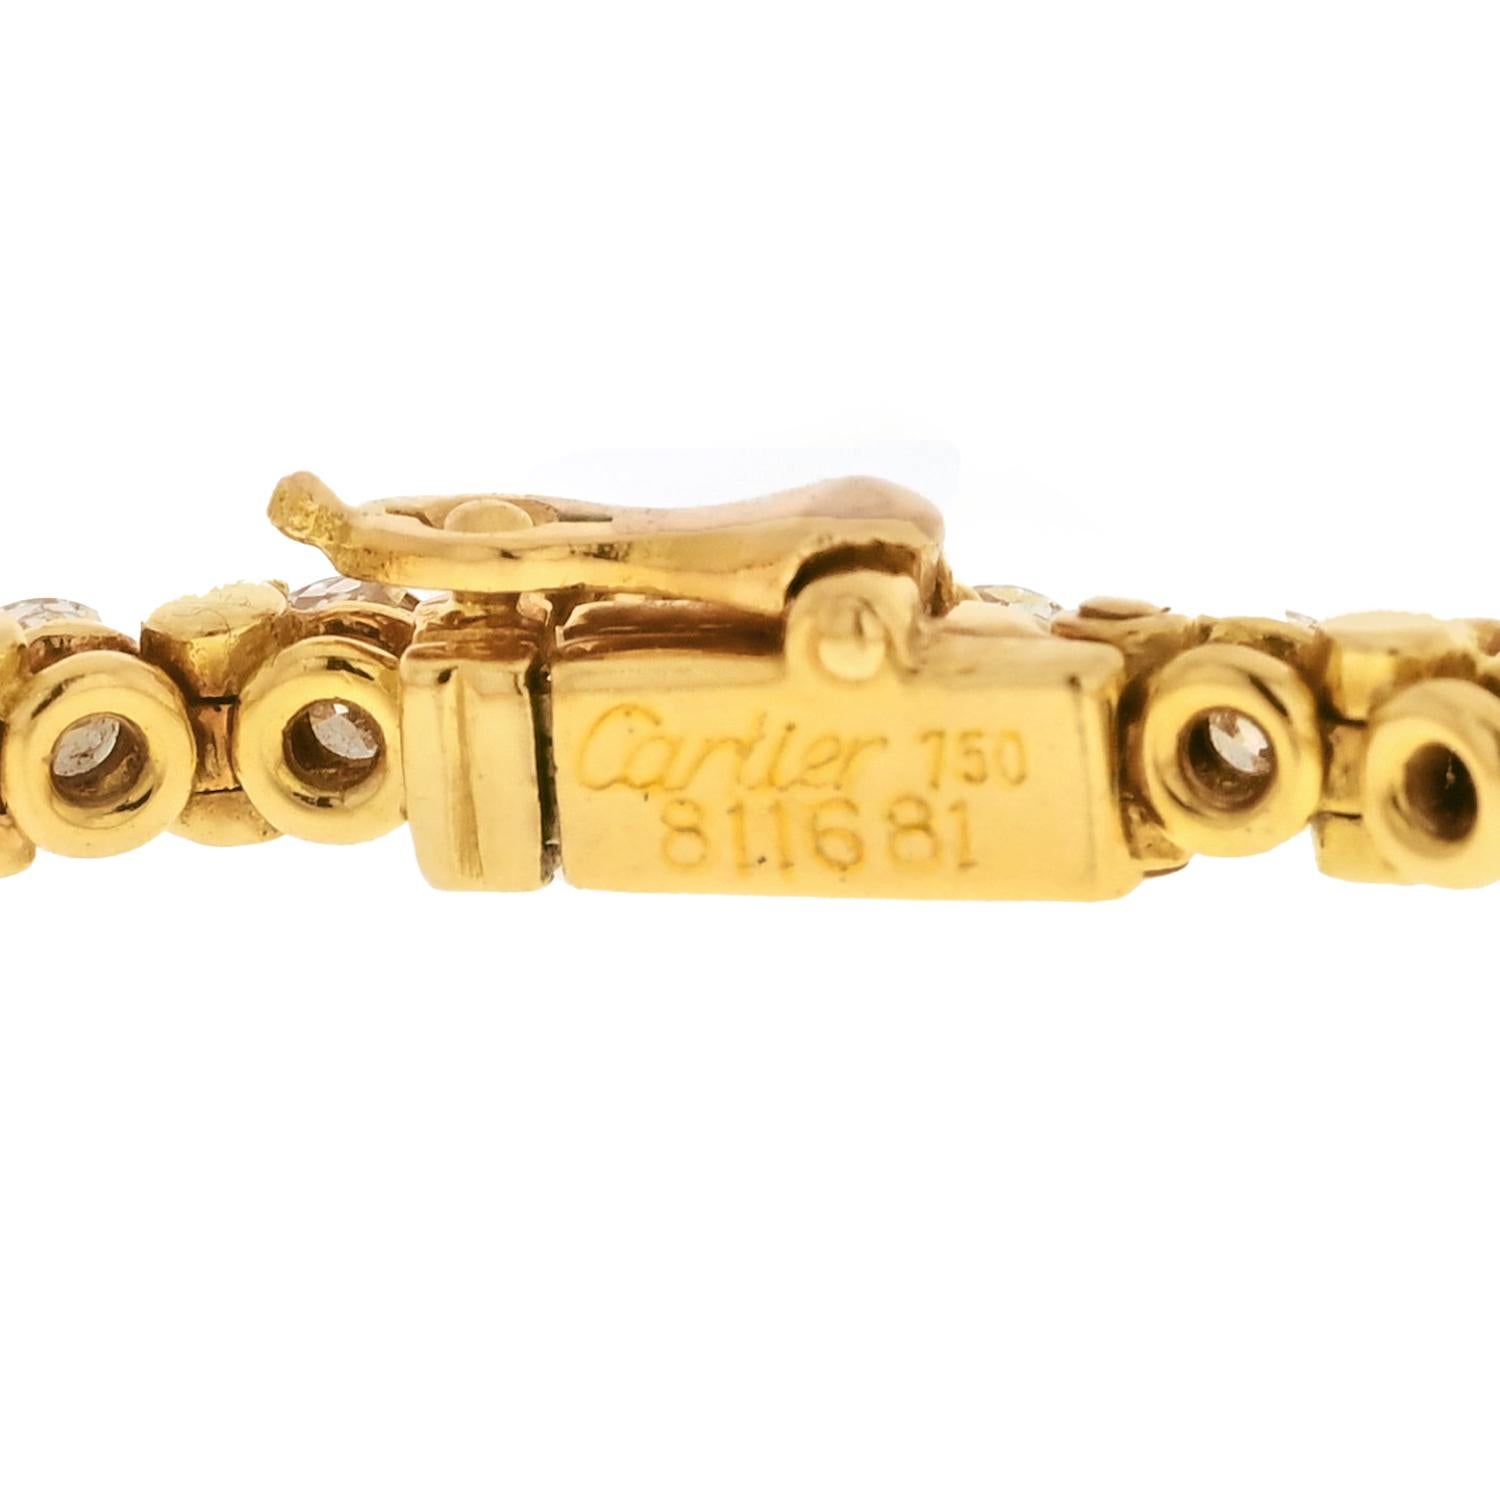 Cartier 18K Gelbgold 4,50cttw Runde Diamant-Tennis-Armband.

Länge: 6.5 Zoll. 
Breite: 3 mm.
Diamanten: F-G, VS1-VS2.
Verschluss: Kastenschließe mit Sicherung. 
MATERIAL: 18K Gelbgold.